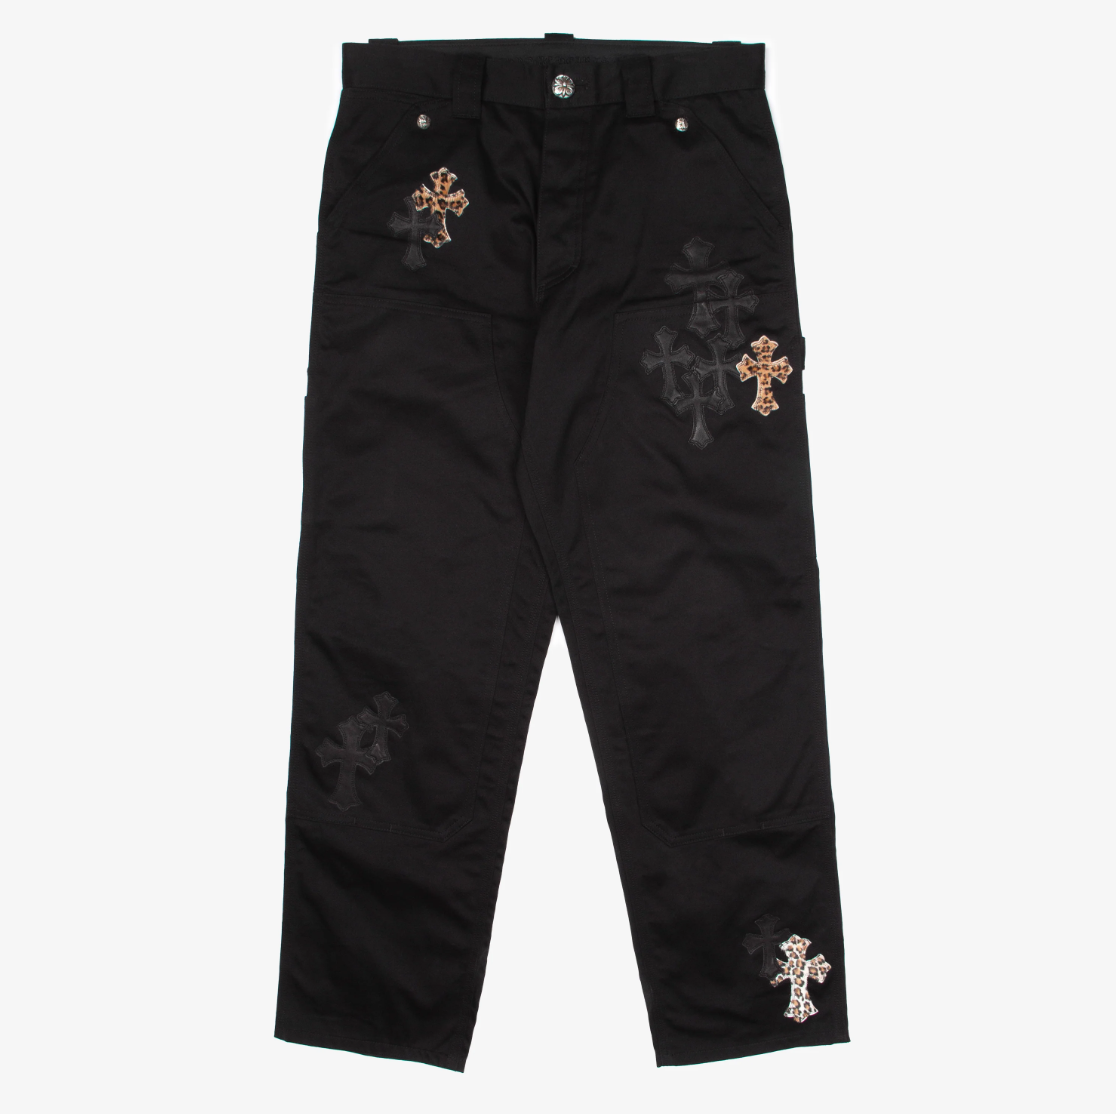 Leopard & Black Cross Patch Carpenter Pants